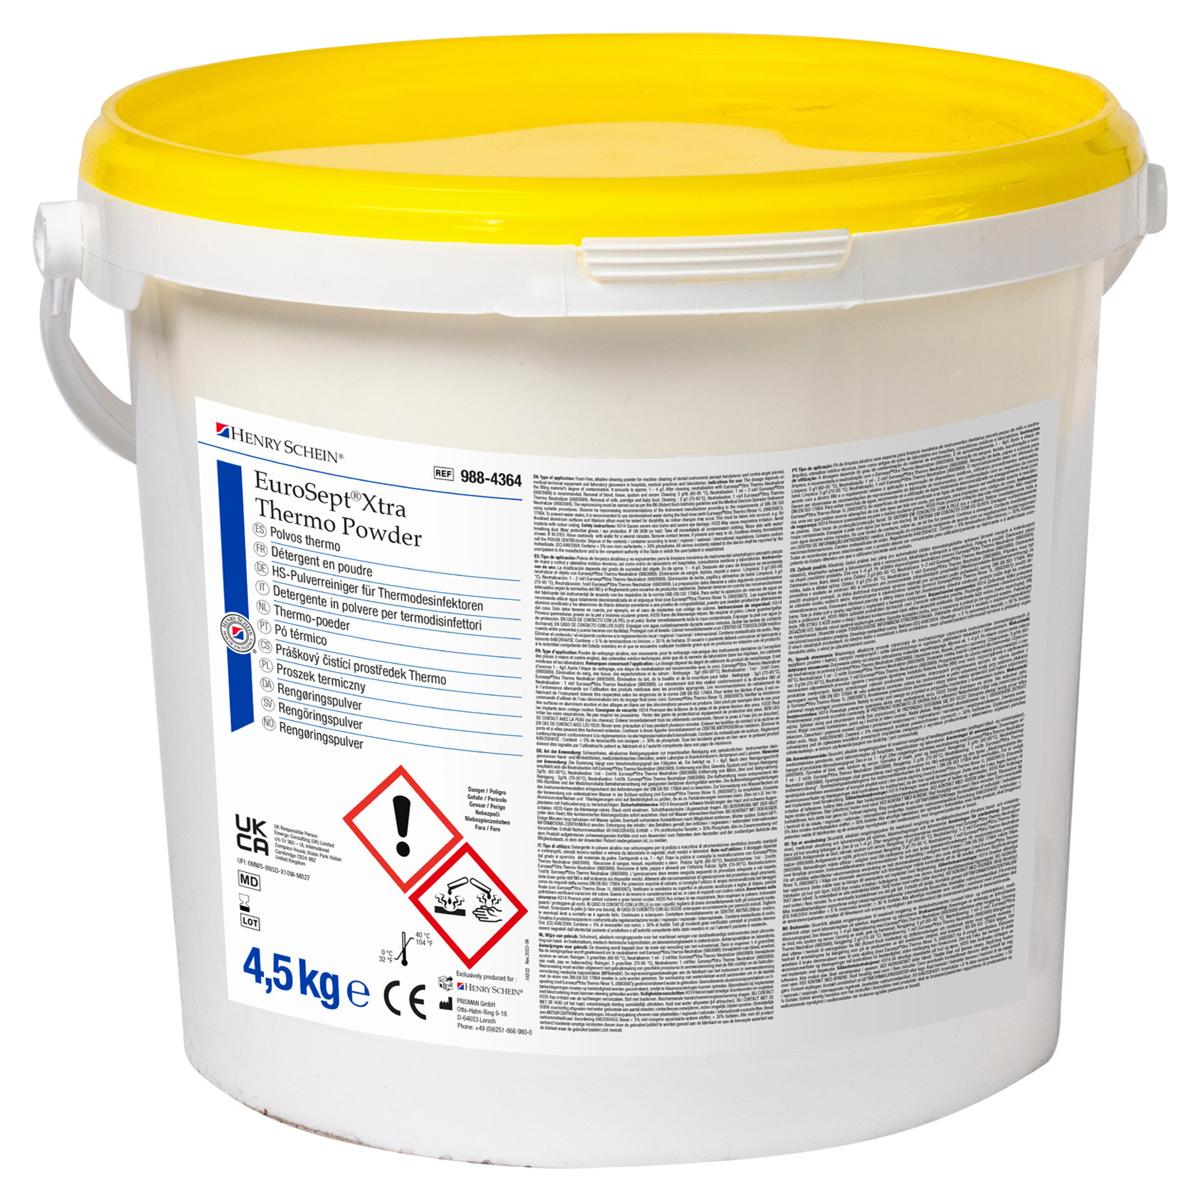 HS-Pulverreiniger für Thermodesinfektor EuroSept® Xtra, Thermo Powder - Eimer 4,5 kg